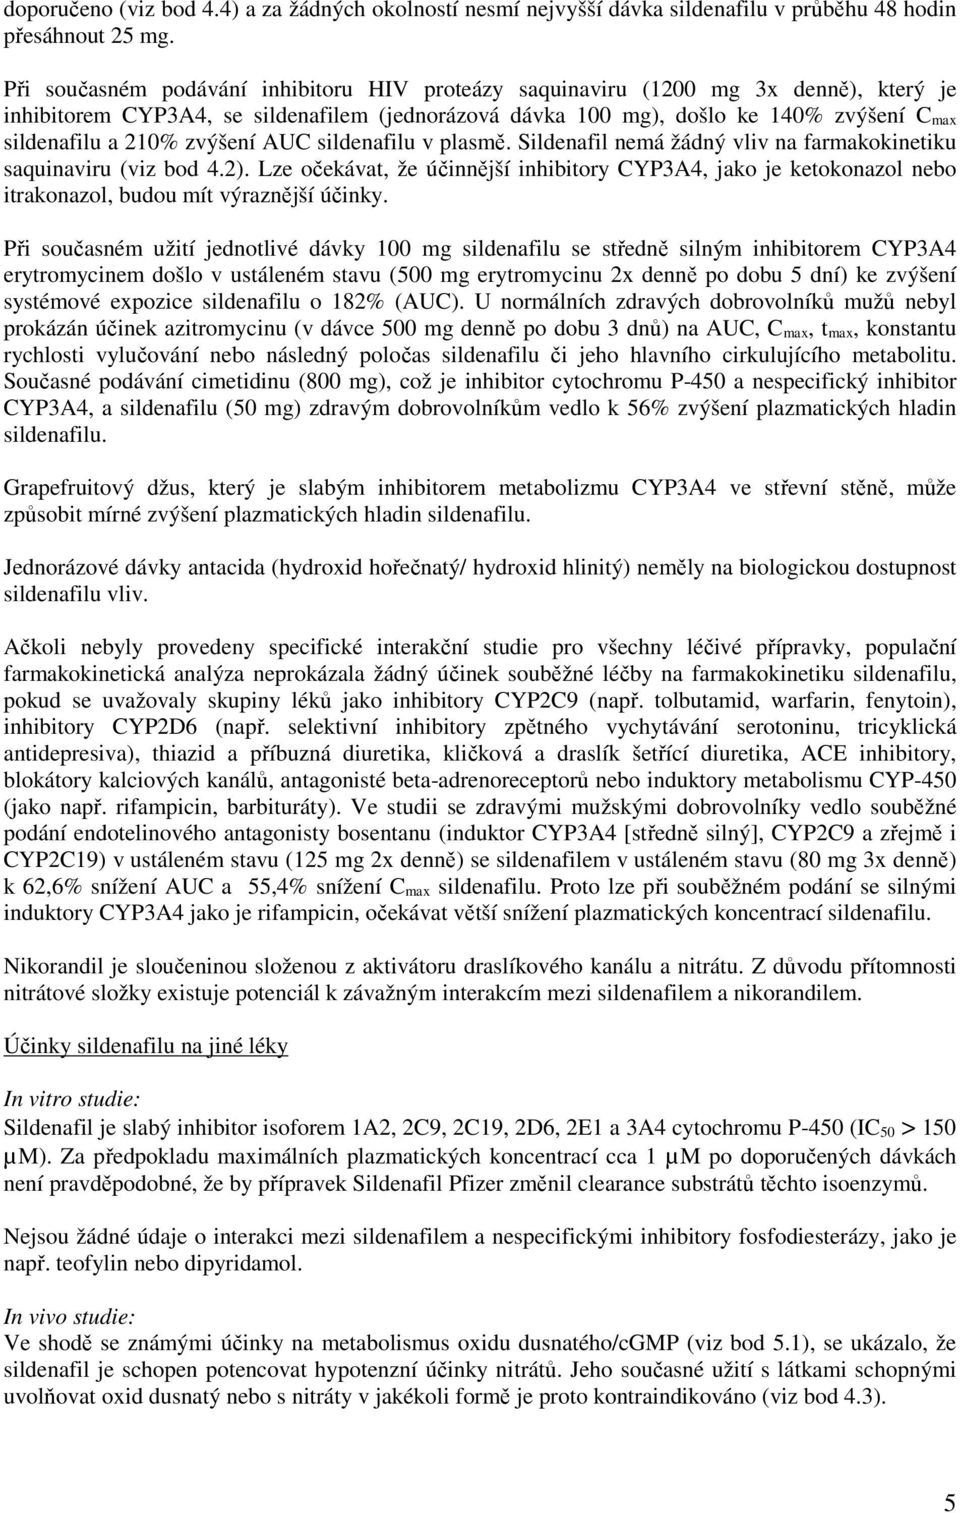 zvýšení AUC sildenafilu v plasmě. Sildenafil nemá žádný vliv na farmakokinetiku saquinaviru (viz bod 4.2).